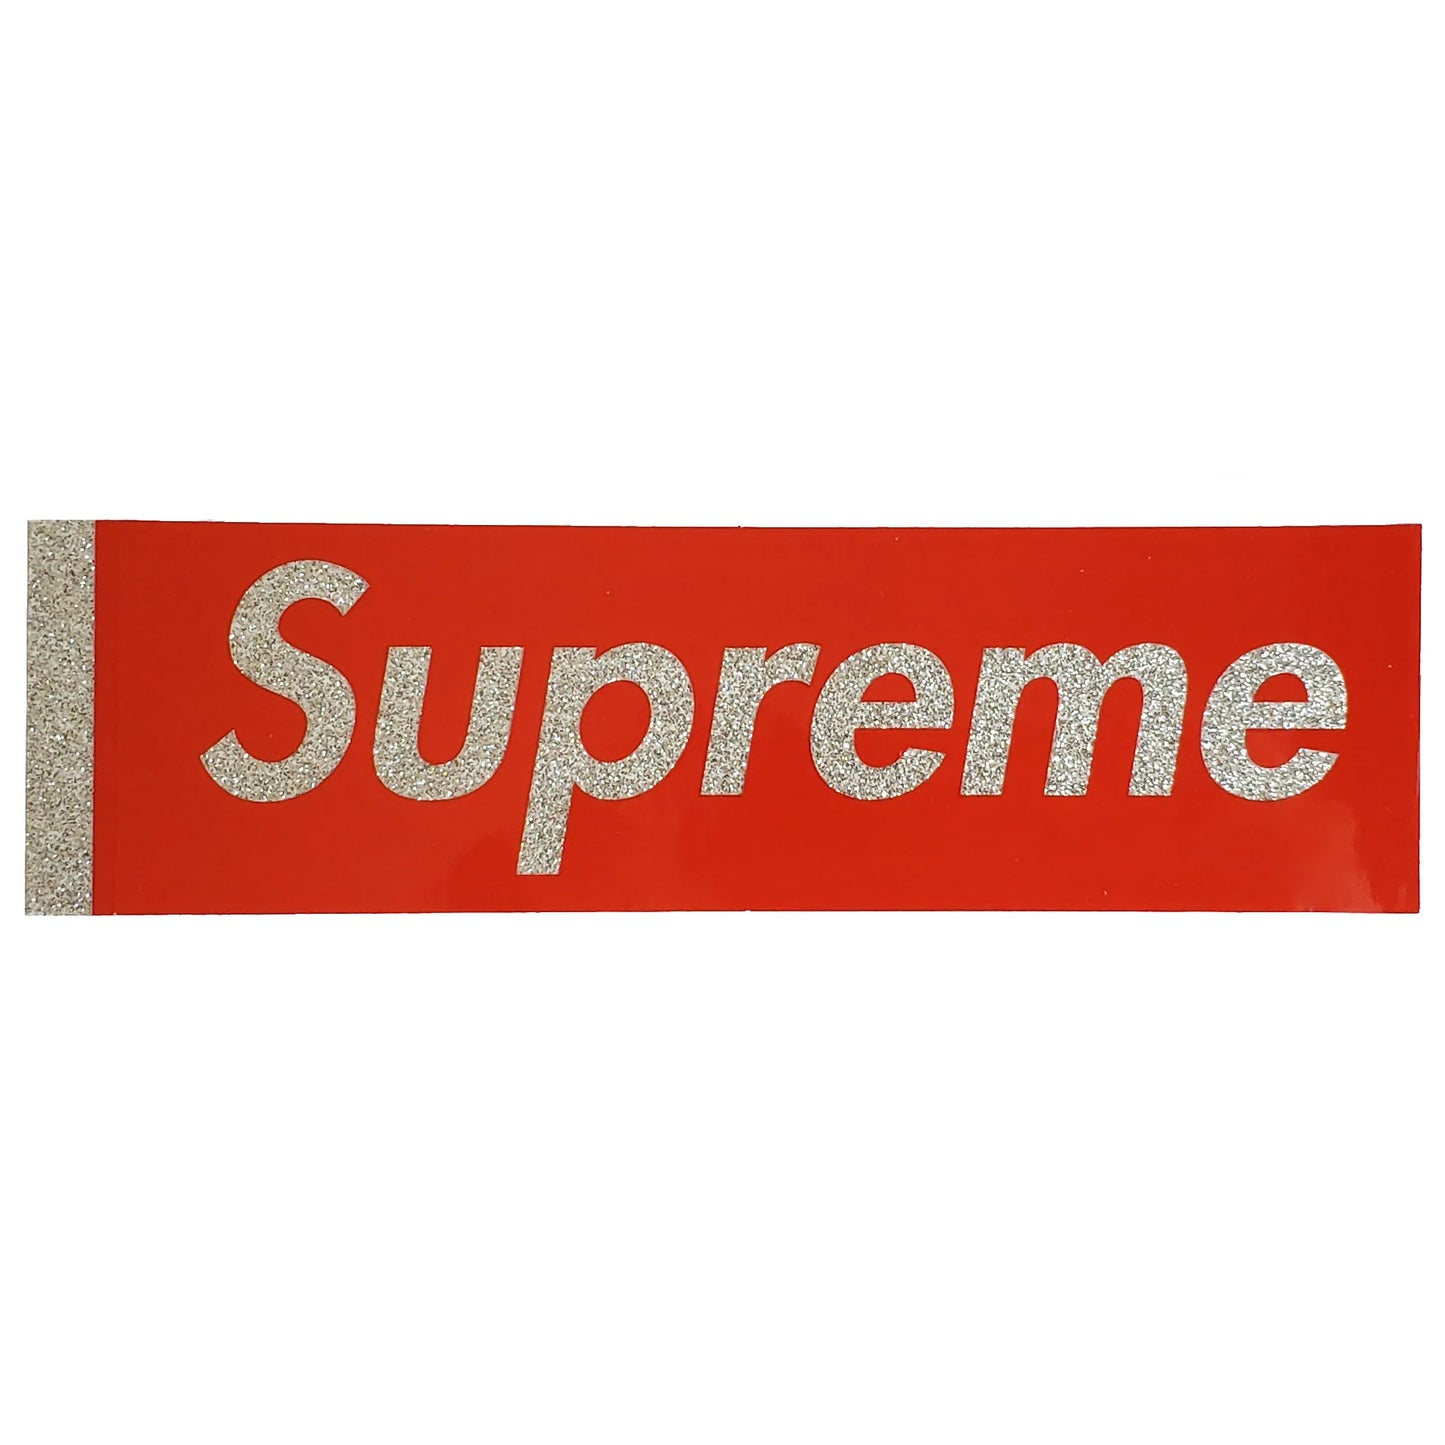 Supreme Glitter Box Logo Sticker